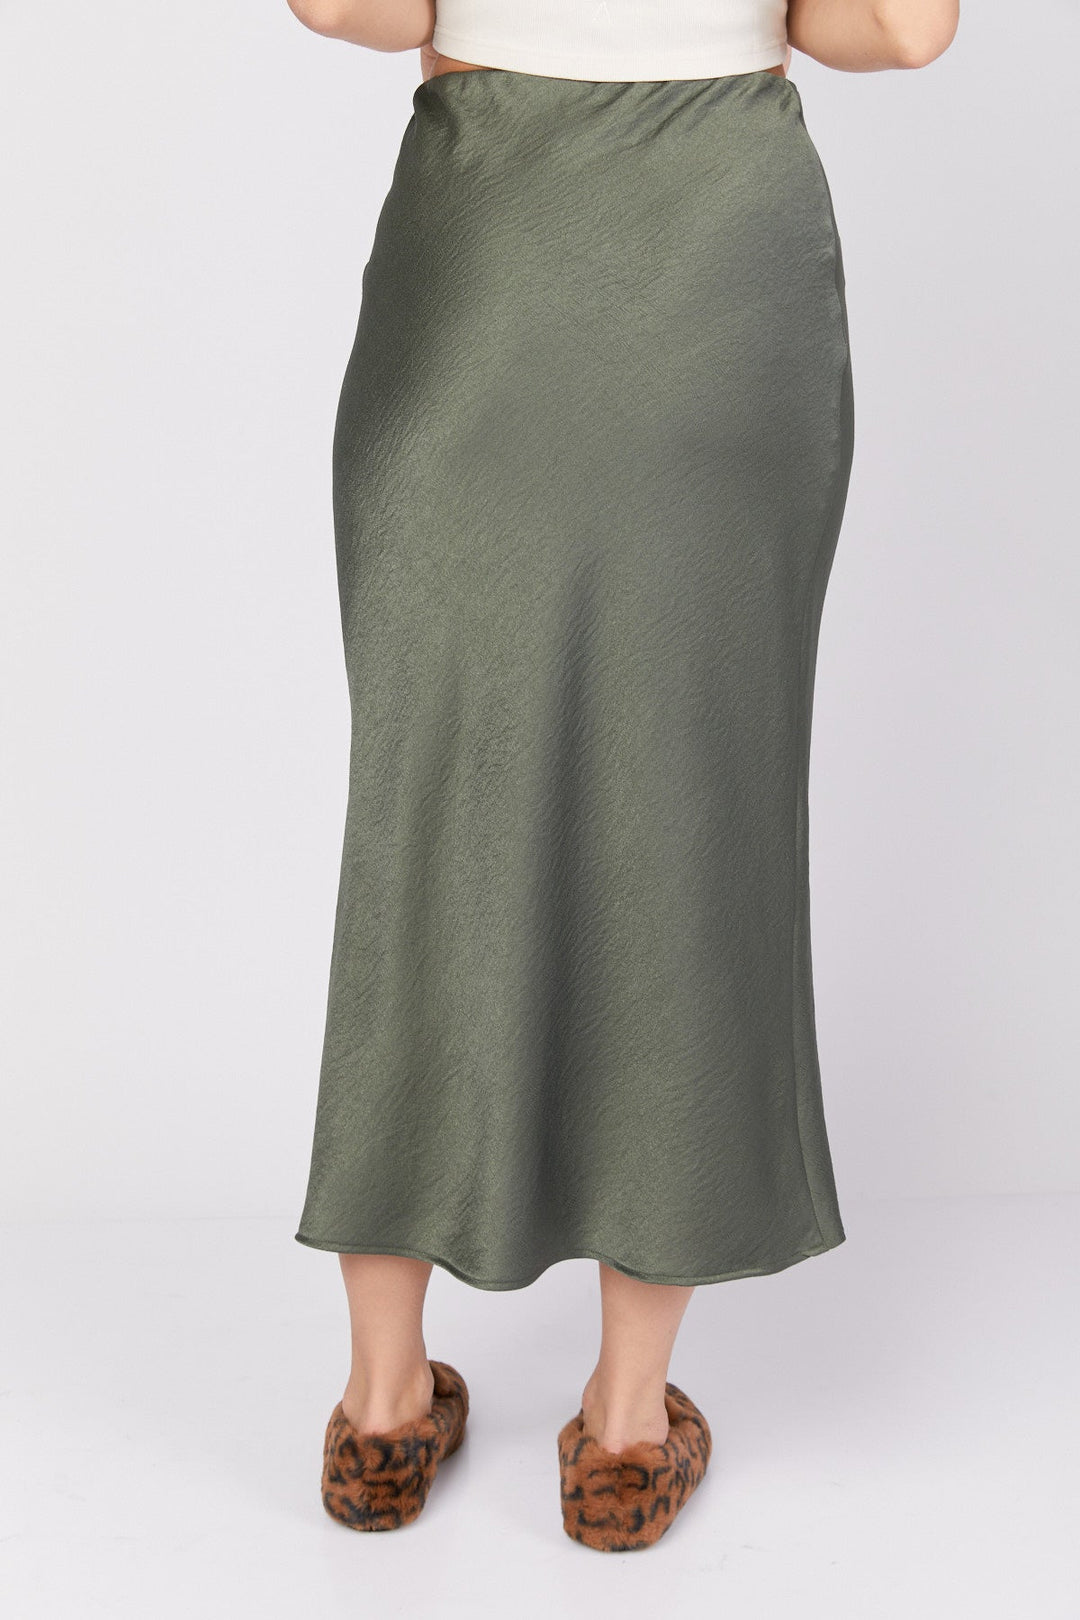 חצאית כריסטין בצבע ירוק - M By Maskit